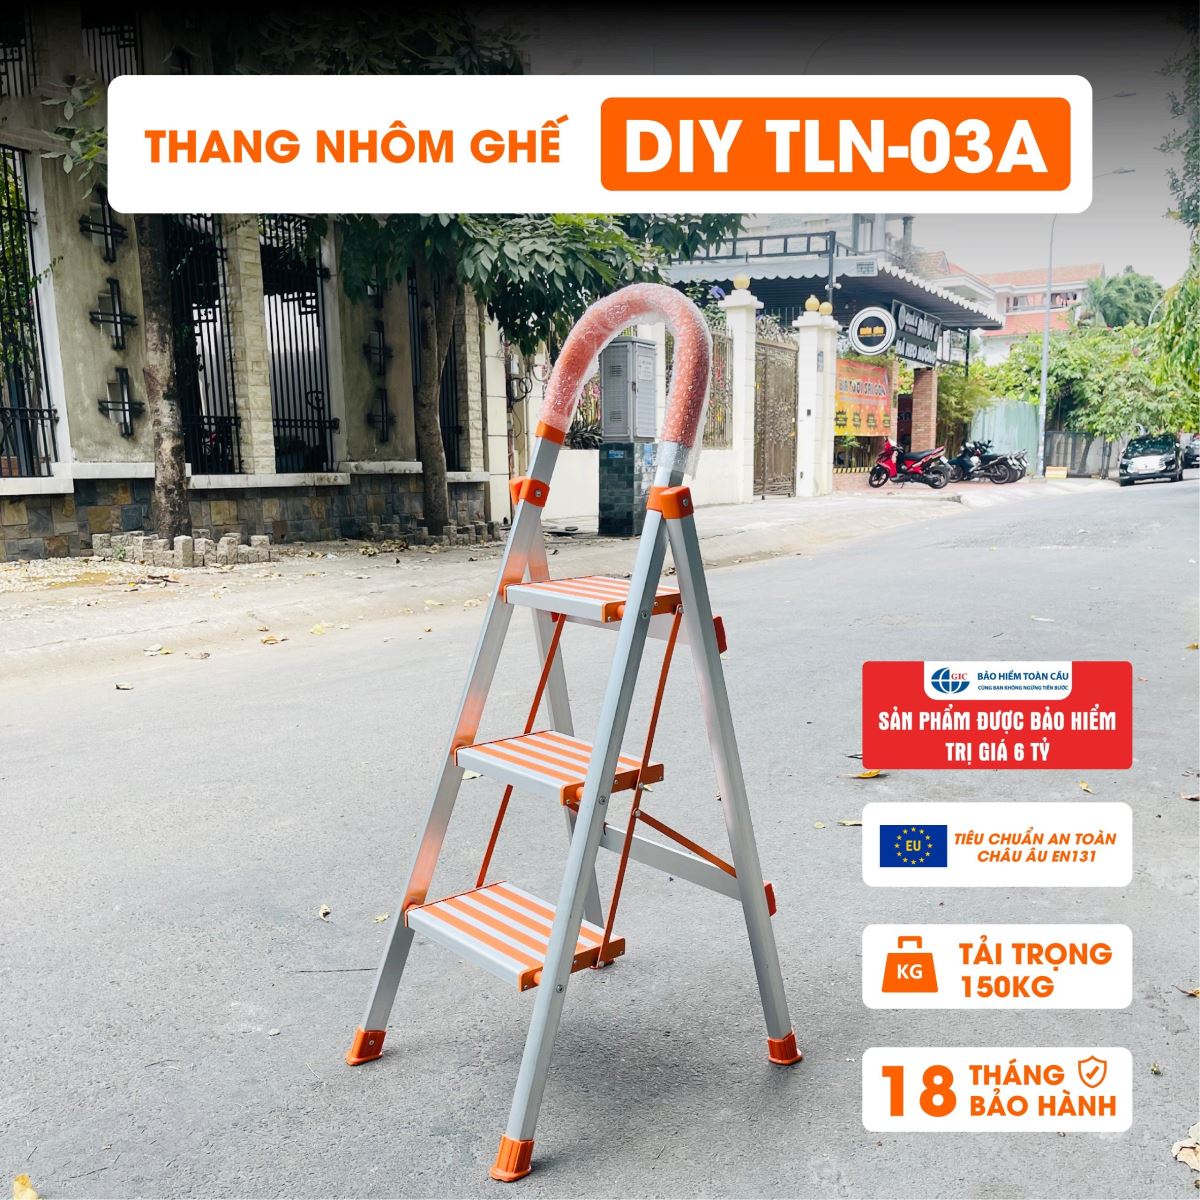 Thang ghế nhôm DIY TLN-03A